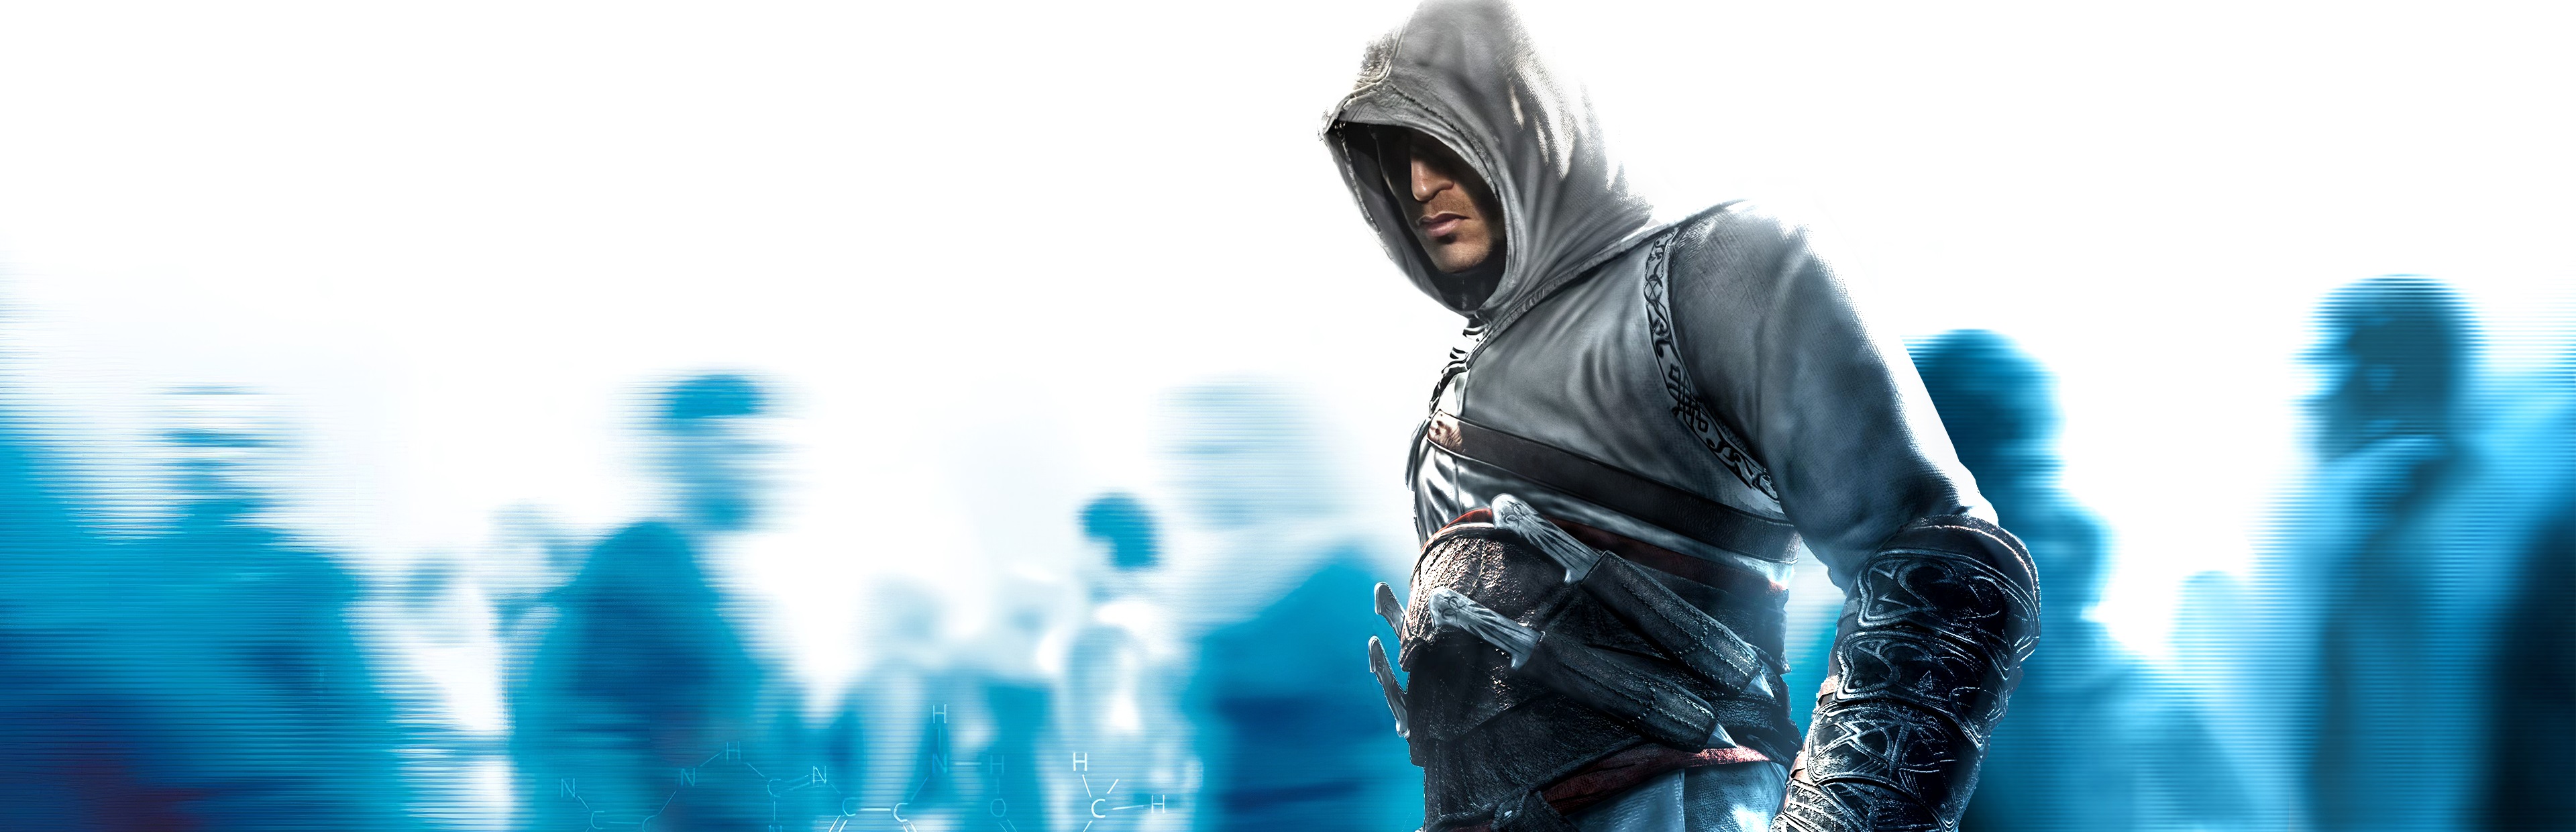 Ассасин крид купить стим. Assassin's Creed 1 обложка. Ассасин Крид 2007. Assassin's Creed 1 обложка игры.